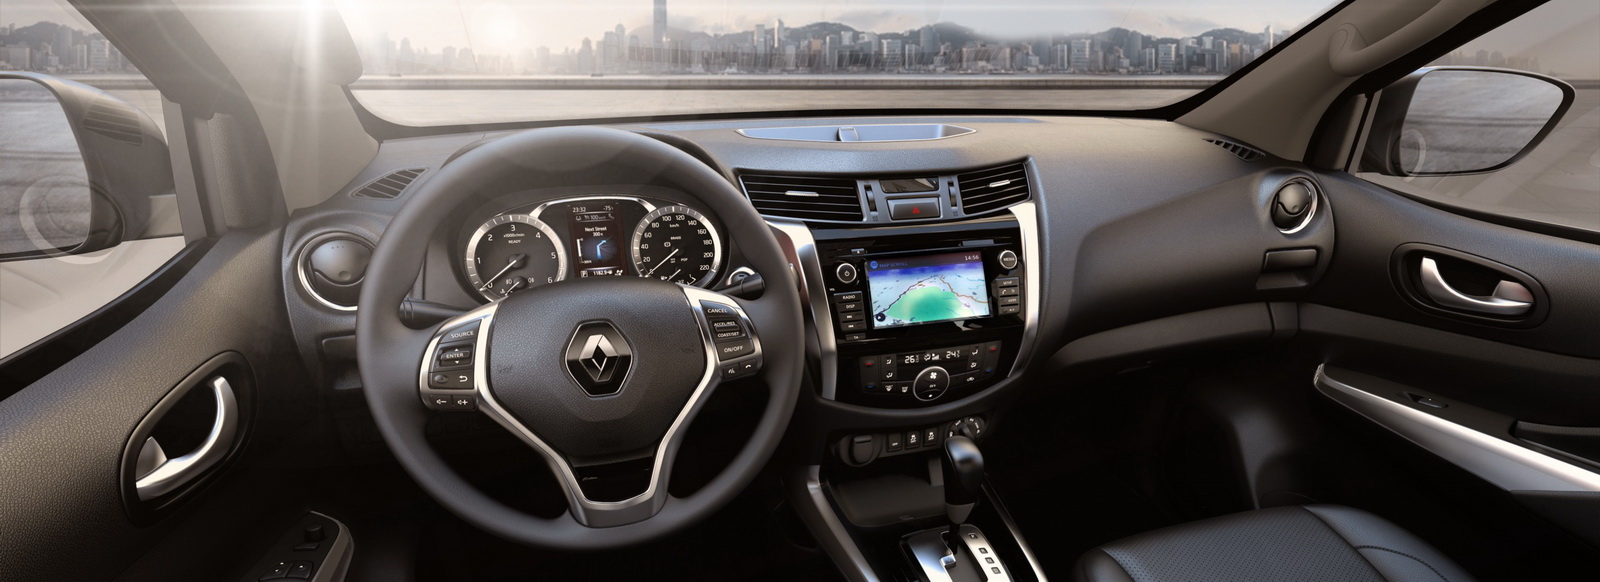 
Bước vào bên trong Renault Alaskan, người lái sẽ được chào đón bằng màn hình 5 inch nằm giữa cụm đồng hồ. Tại một số thị trường, Renault Alaskan còn có hệ thống thông tin giải trí với màn hình 7 inch. Thêm vào đó là hệ thống 4 camera cho khả năng quan sát toàn cảnh xung quanh xe.
